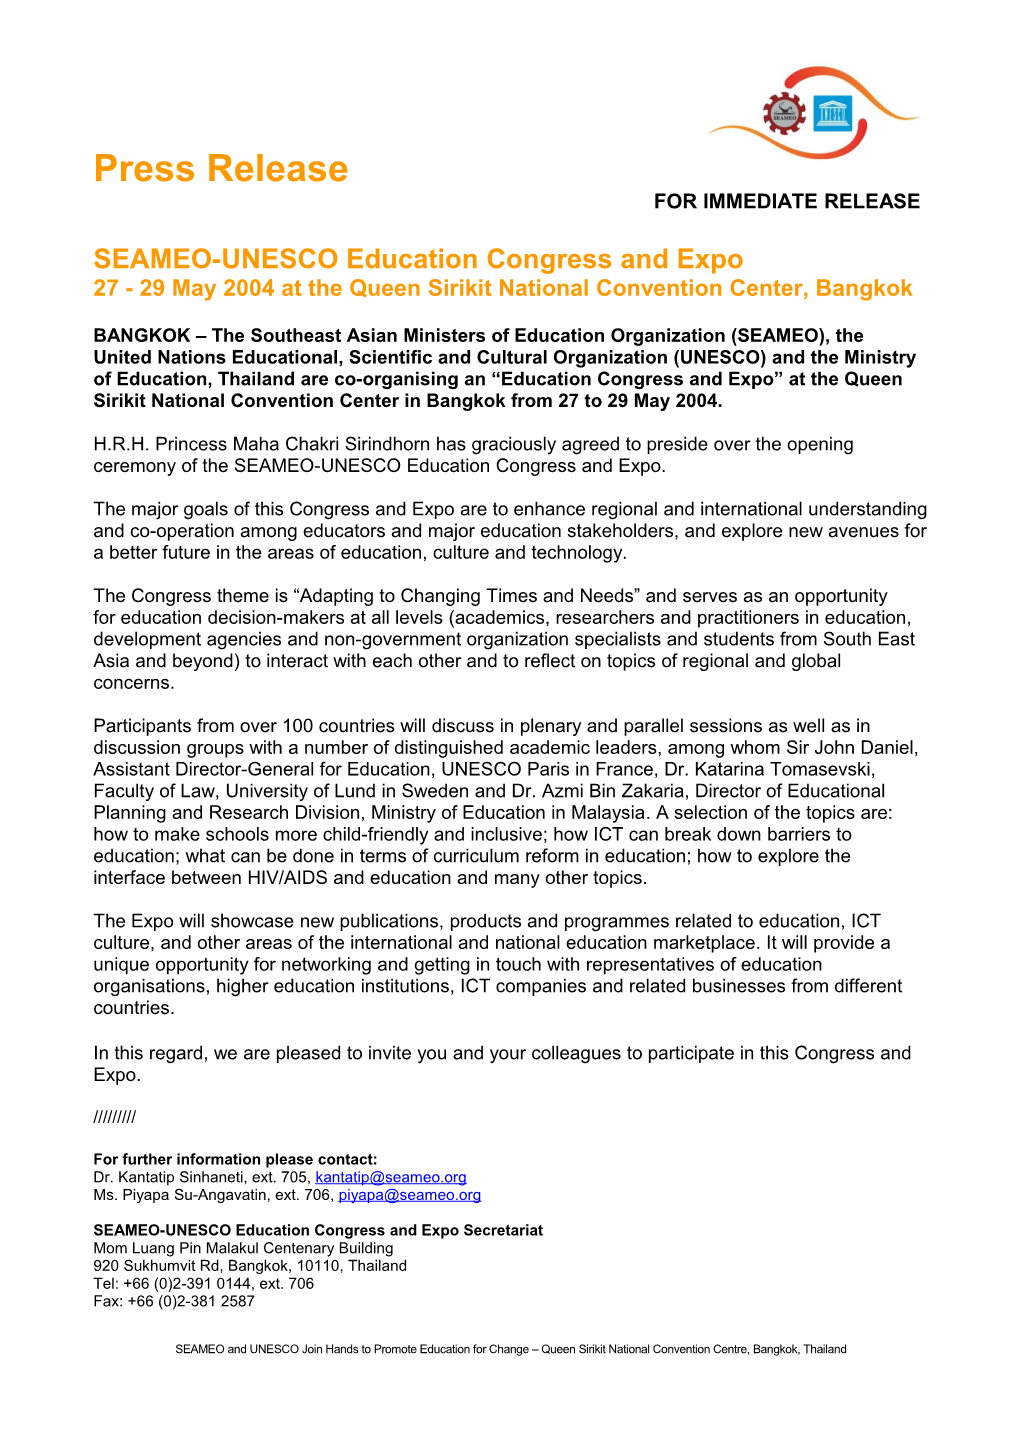 SEAMEO-UNESCO Education Congress and Expo